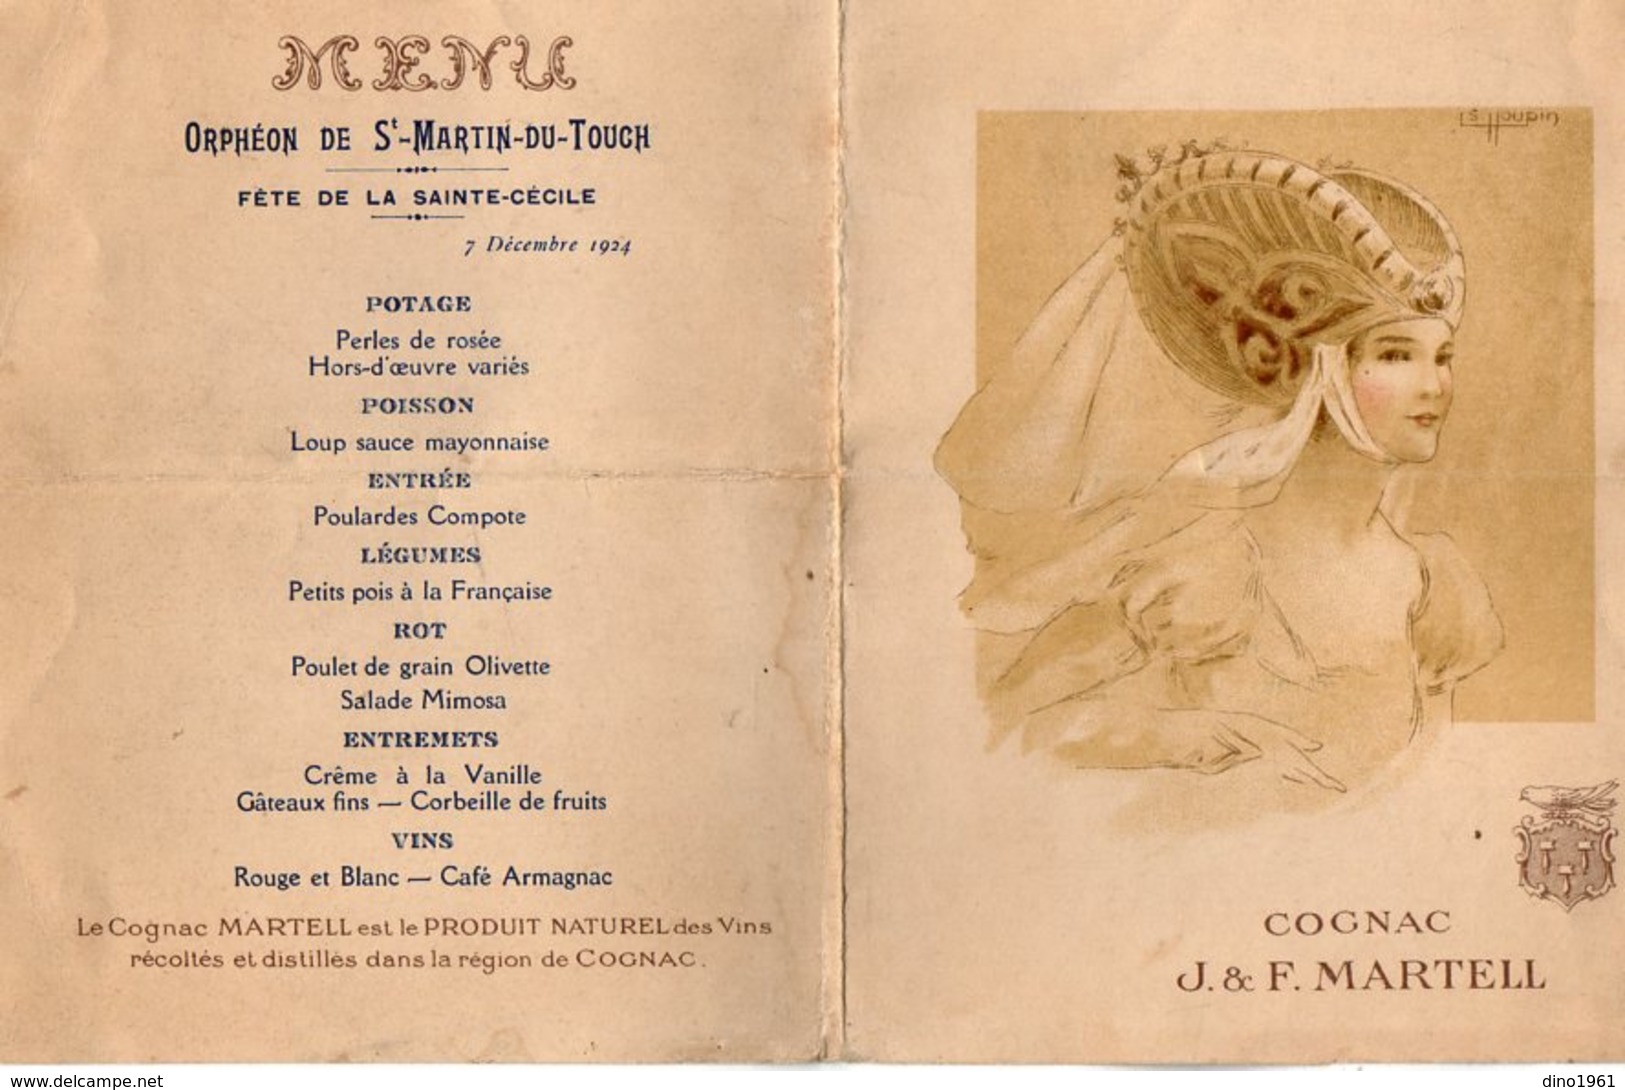 VP14.795 - Orphéon De SAINT MARTIN DU TOUCH 1924 - Fête De La Sainte - Cécile - Menu Illustré - Cognac J. F. MARTELL - Menu